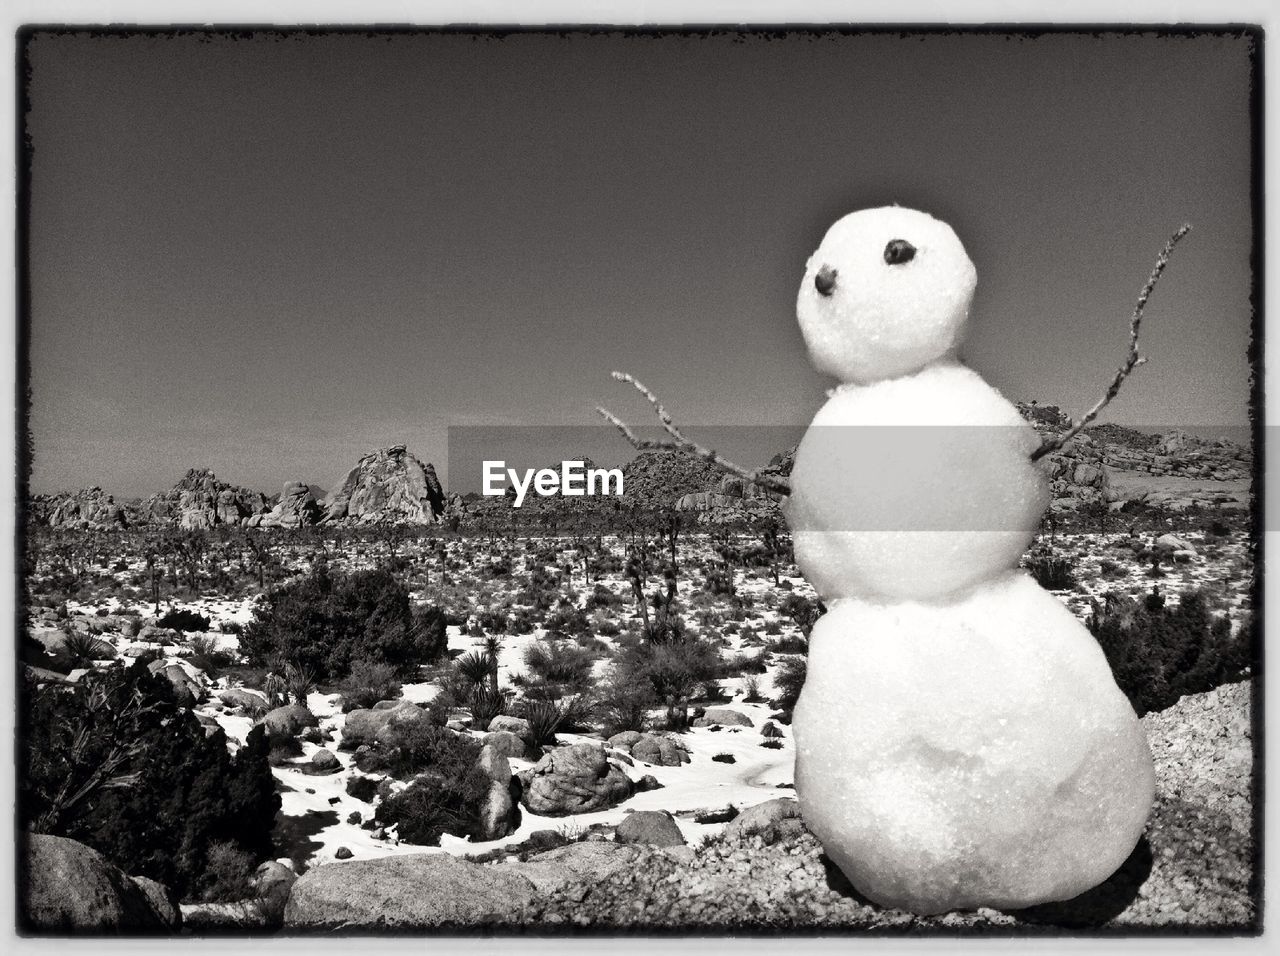 Snowman on rock against clear sky